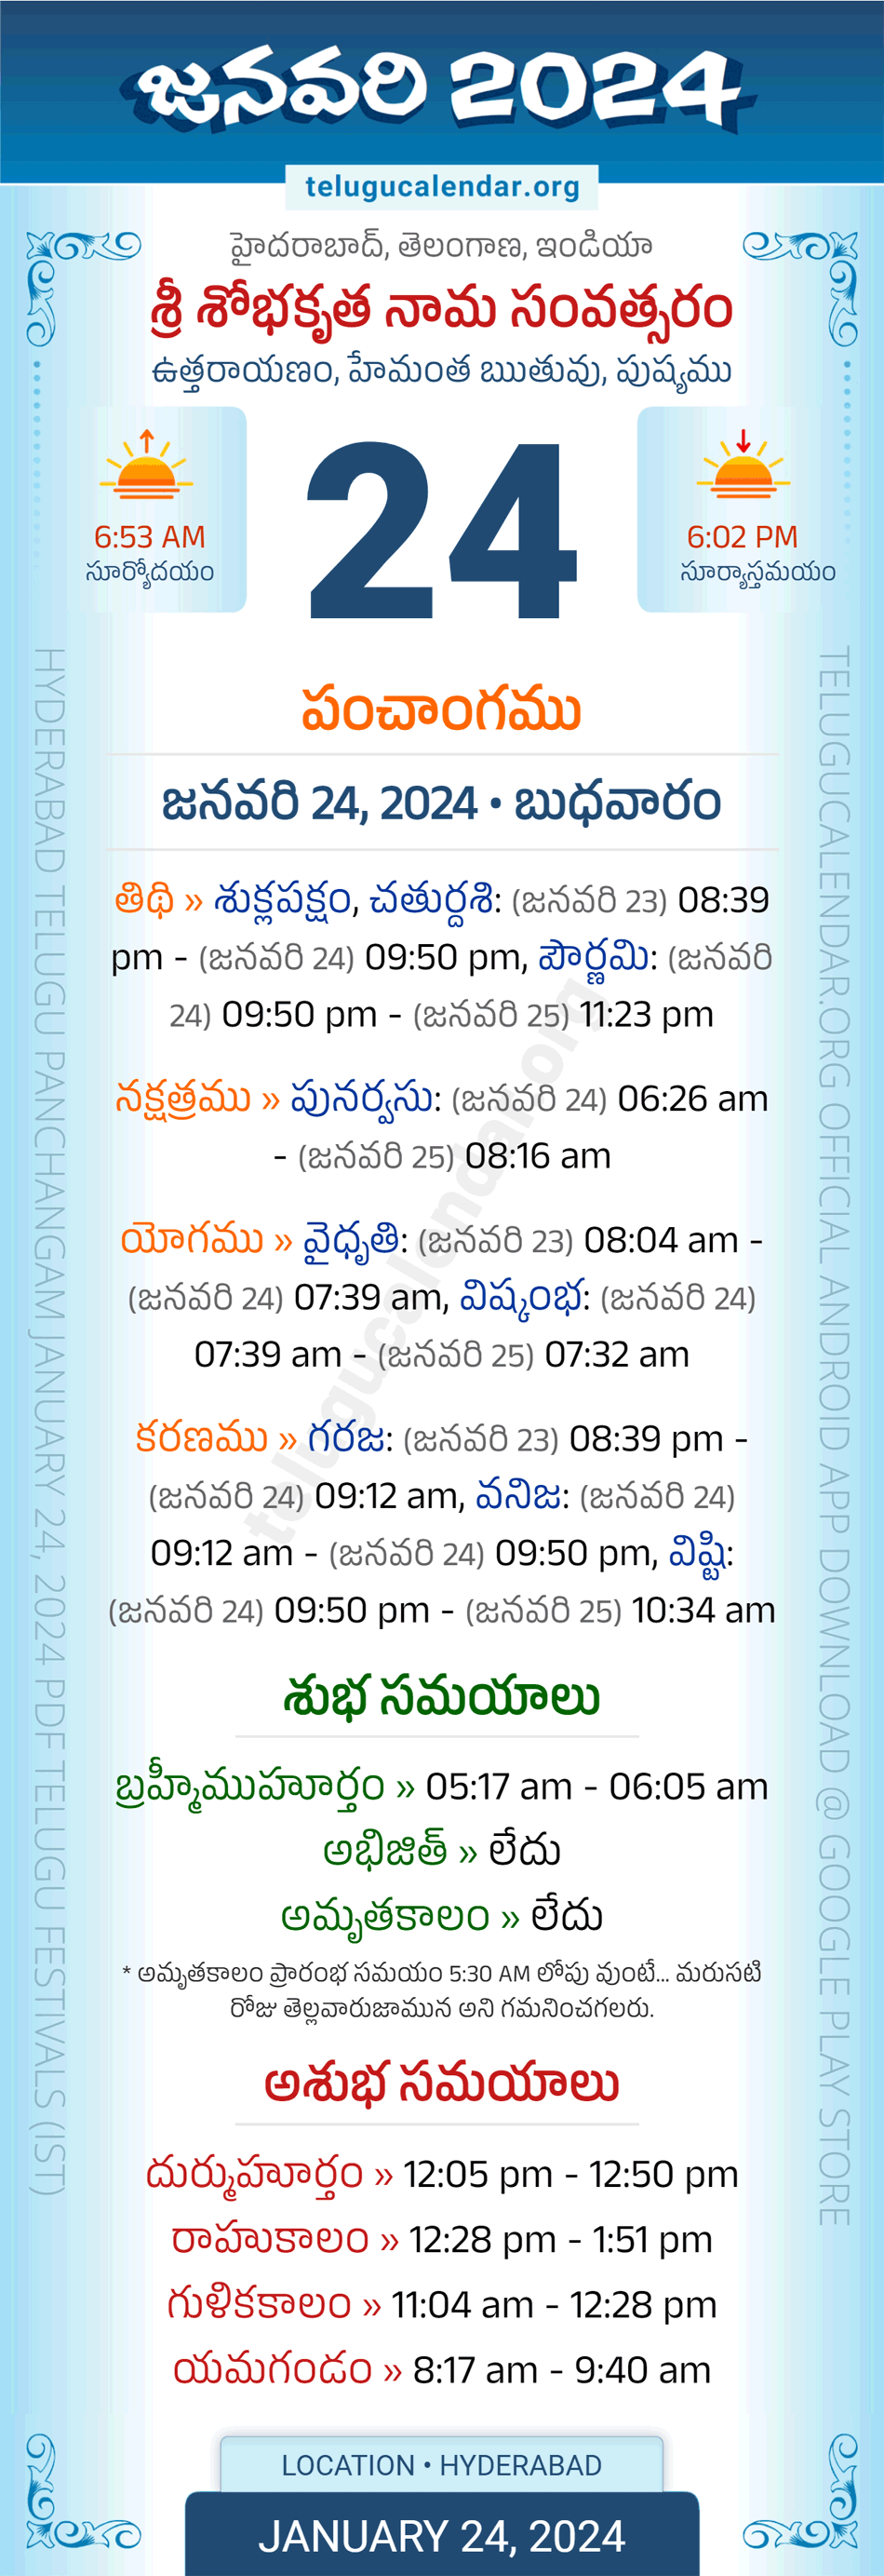 January 24, 2024 Telugu Calendar Panchangam Telangana